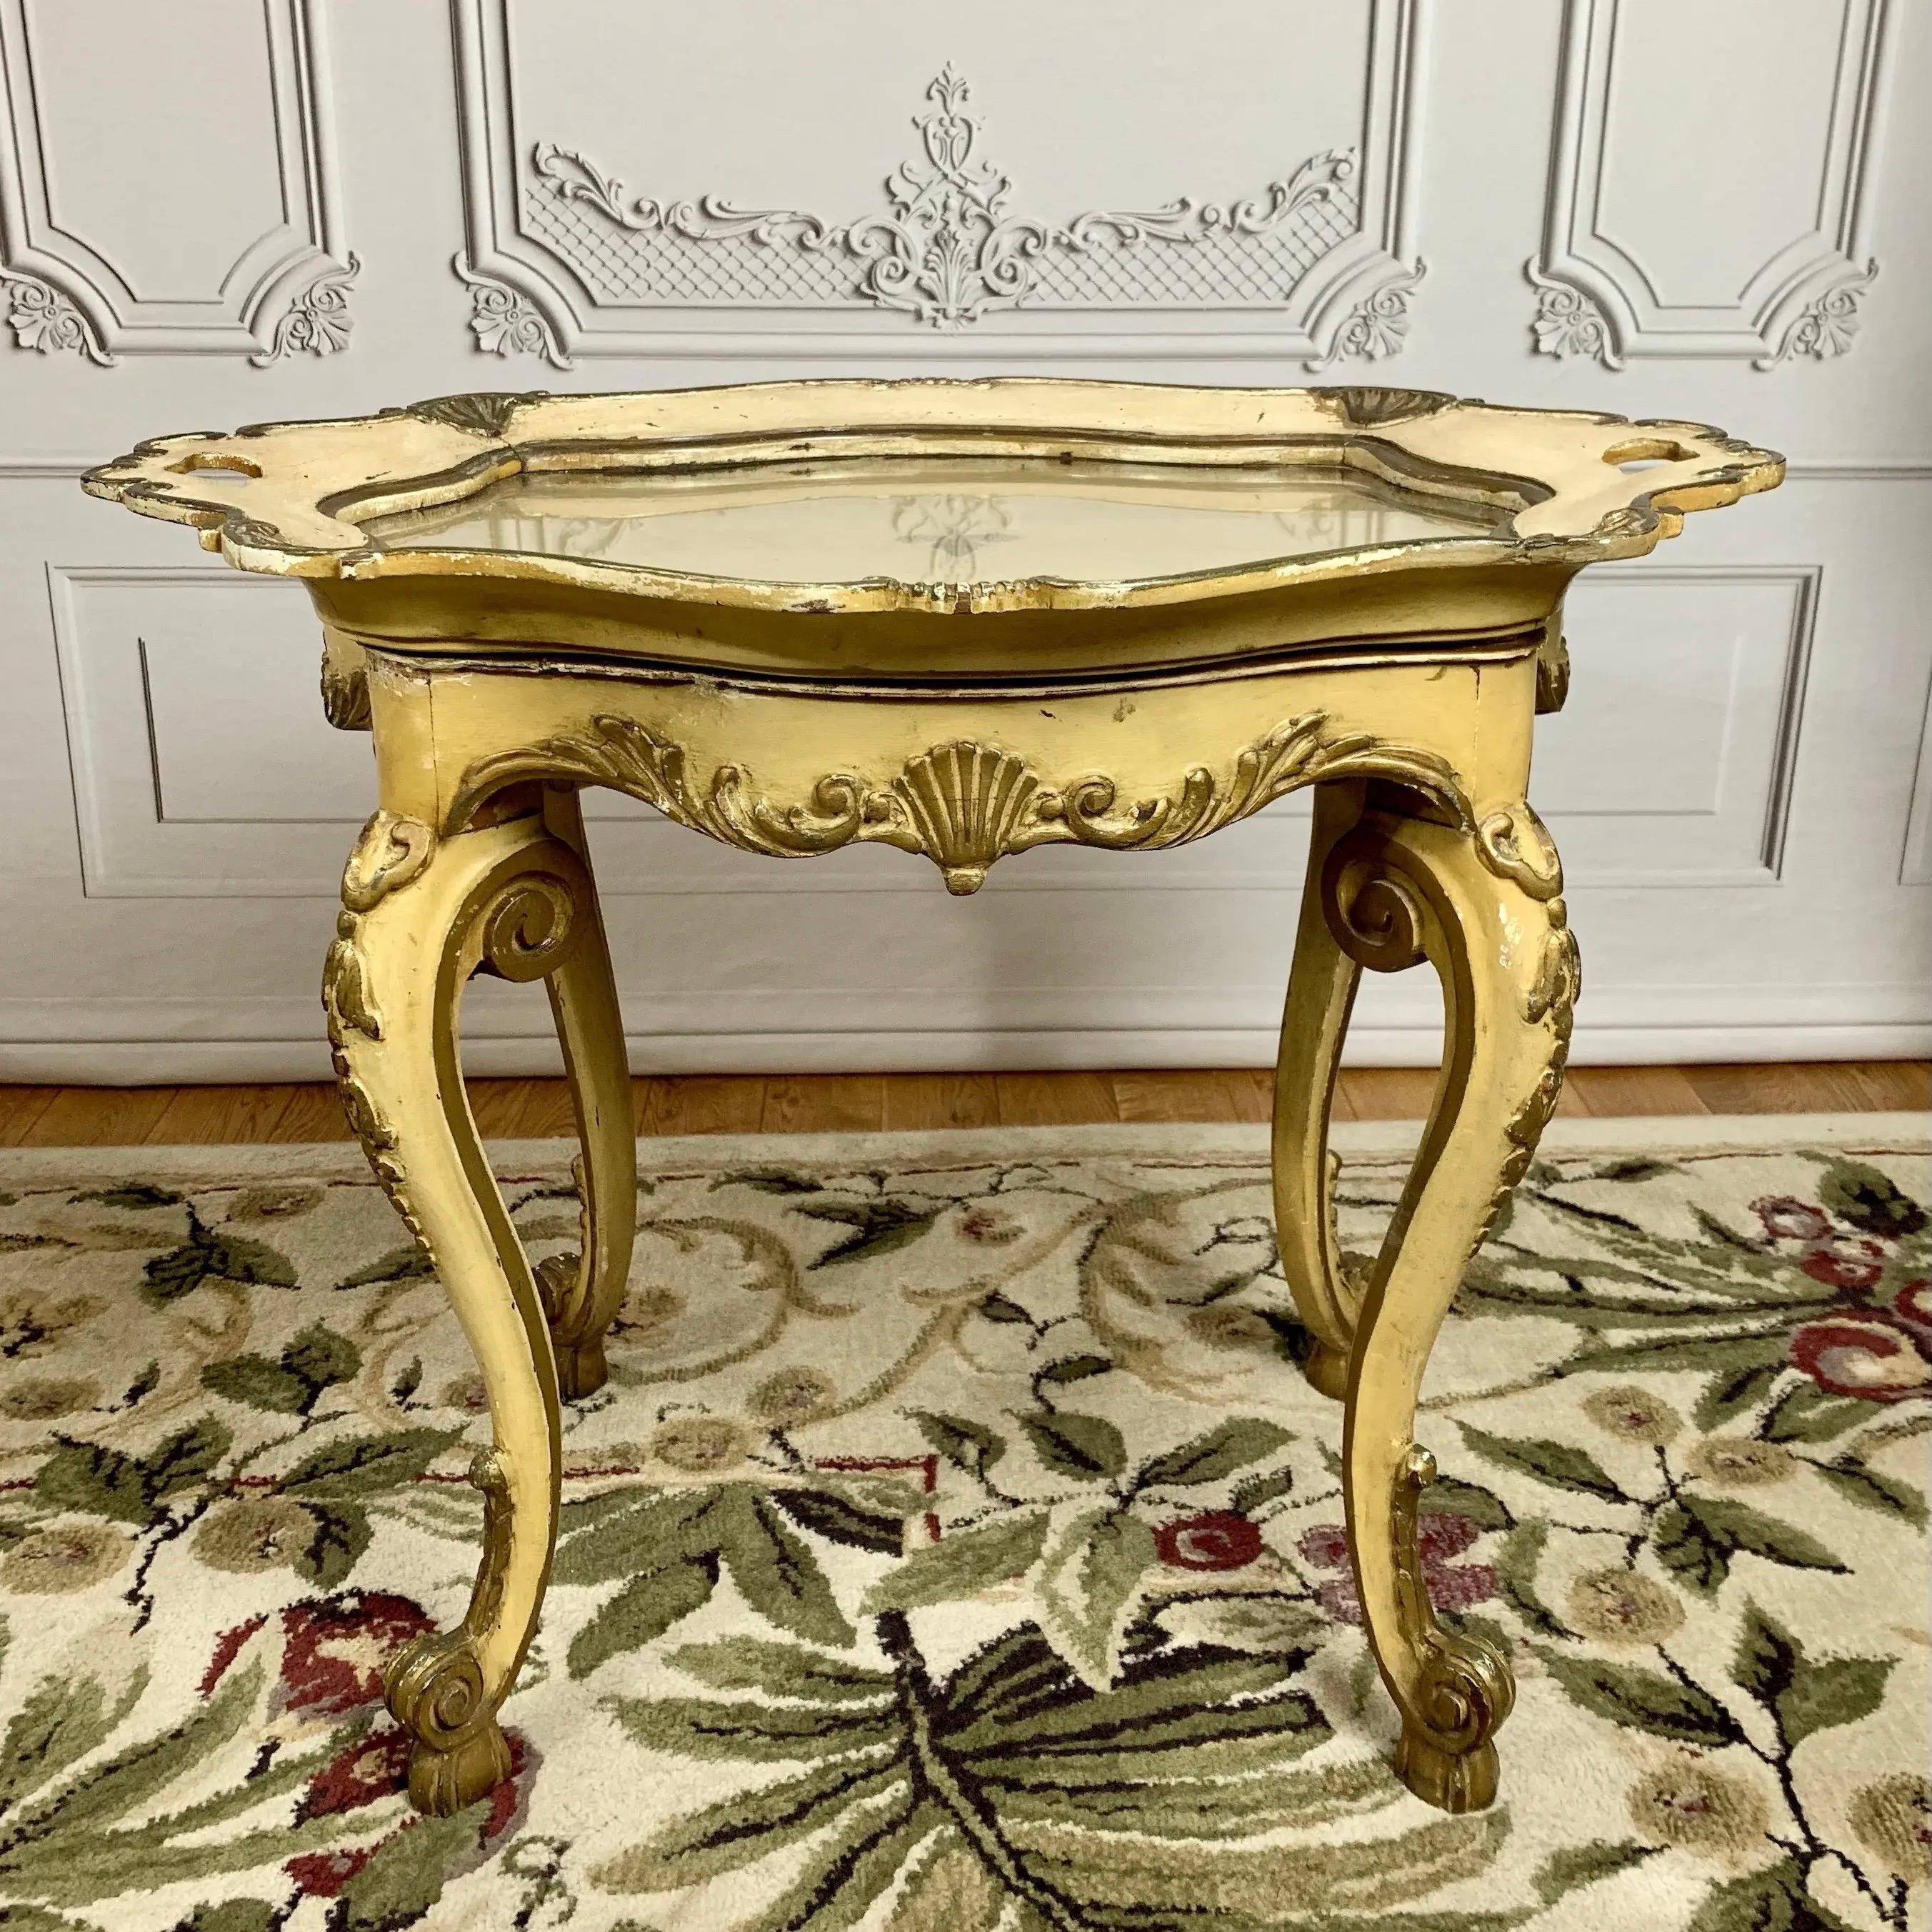 Ajoutez une touche d'élégance ancienne à votre décoration intérieure avec cette table à plateau de style Louis XV Rococo. Fabriqué en France vers la fin du XVIIIe siècle. Une table d'appoint légère et richement décorée, conçue dans un souci de